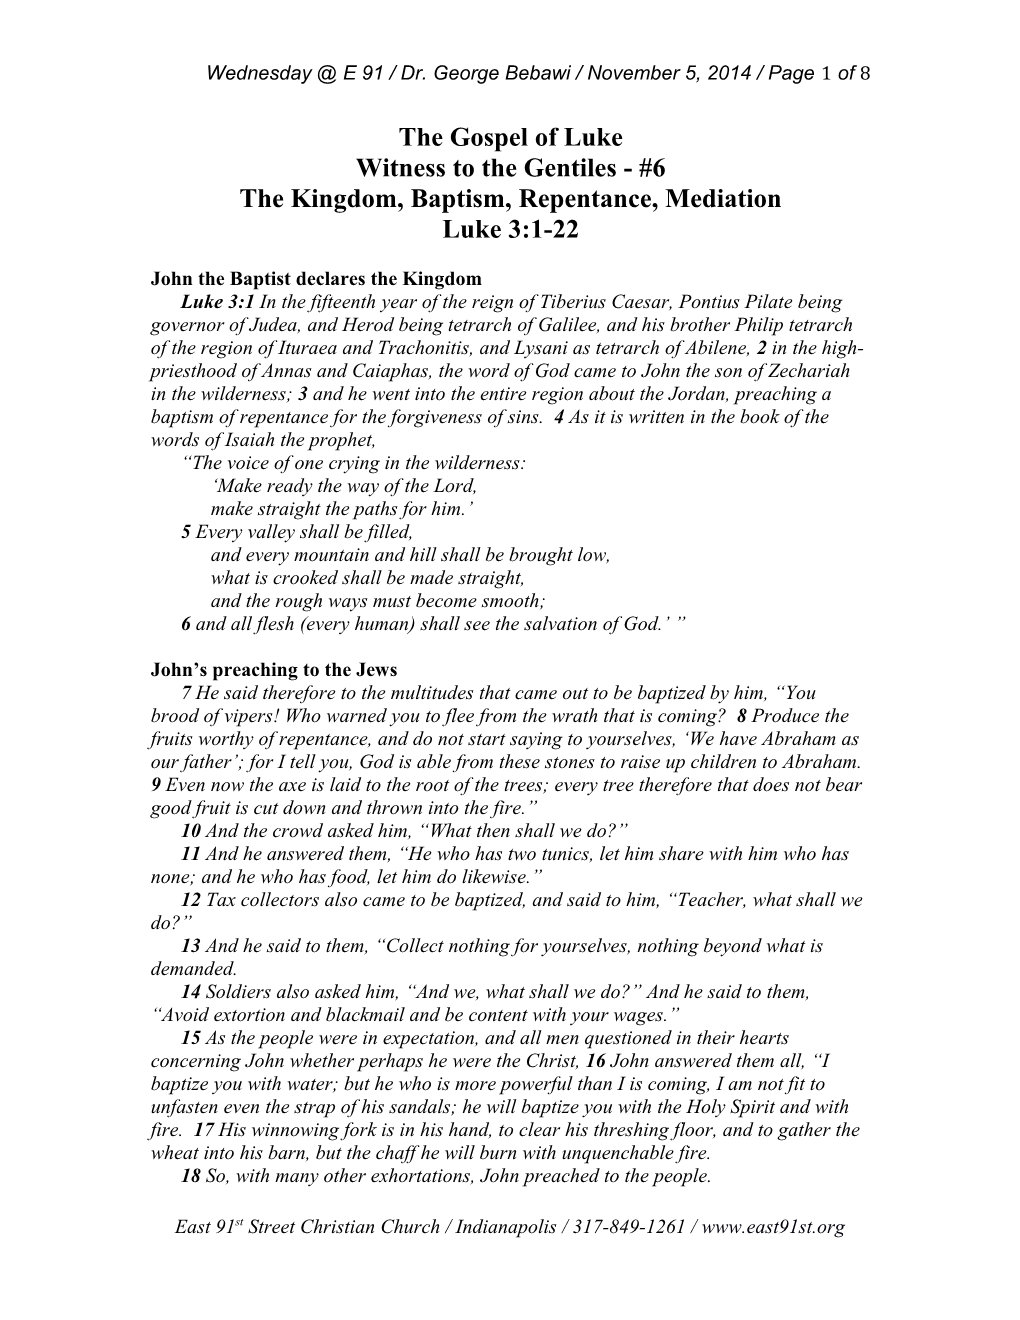 The Kingdom, Baptism, Repentance, Mediation